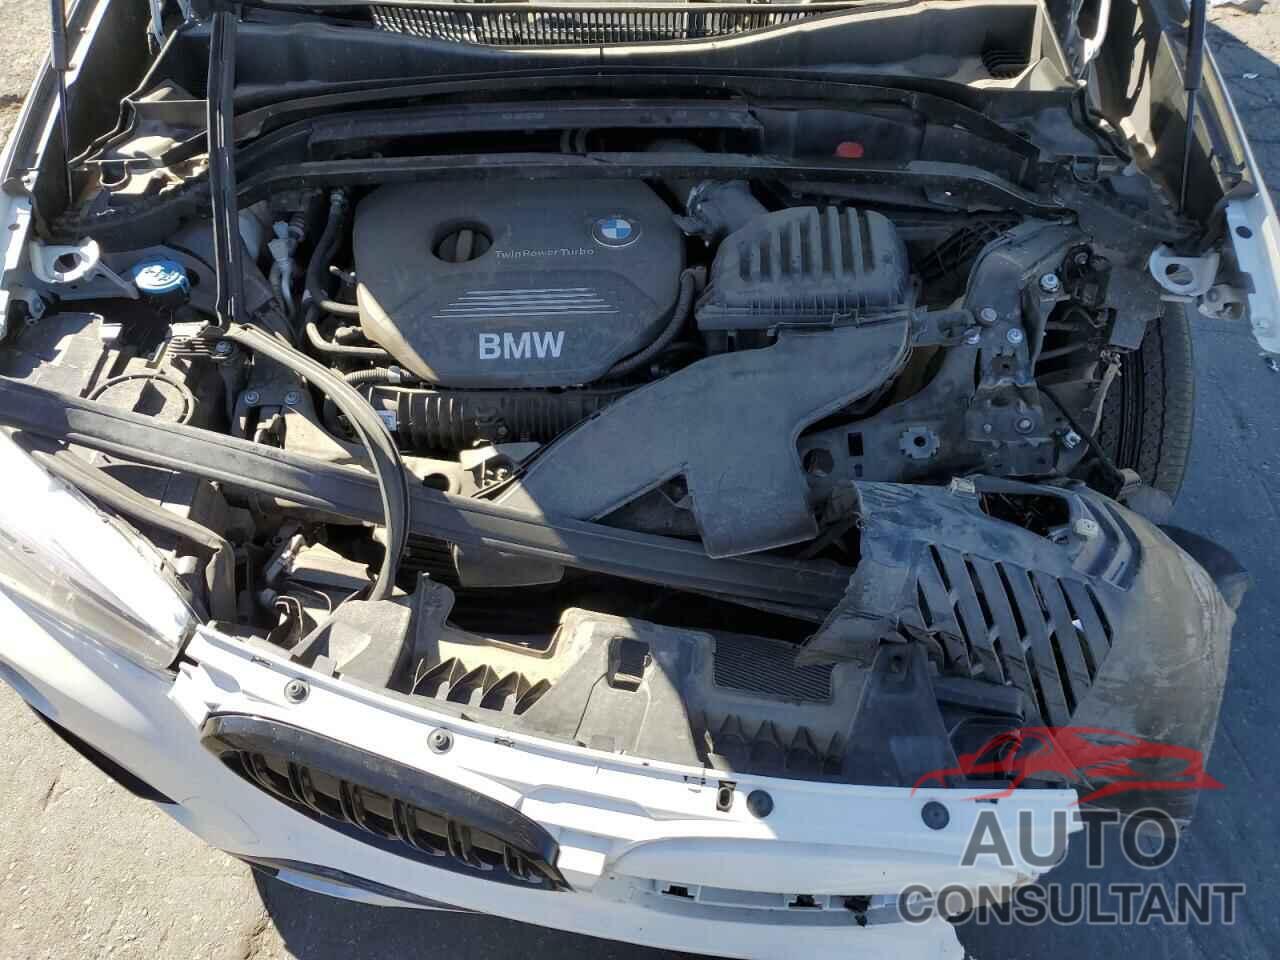 BMW X1 2018 - WBXHU7C34J5H40201